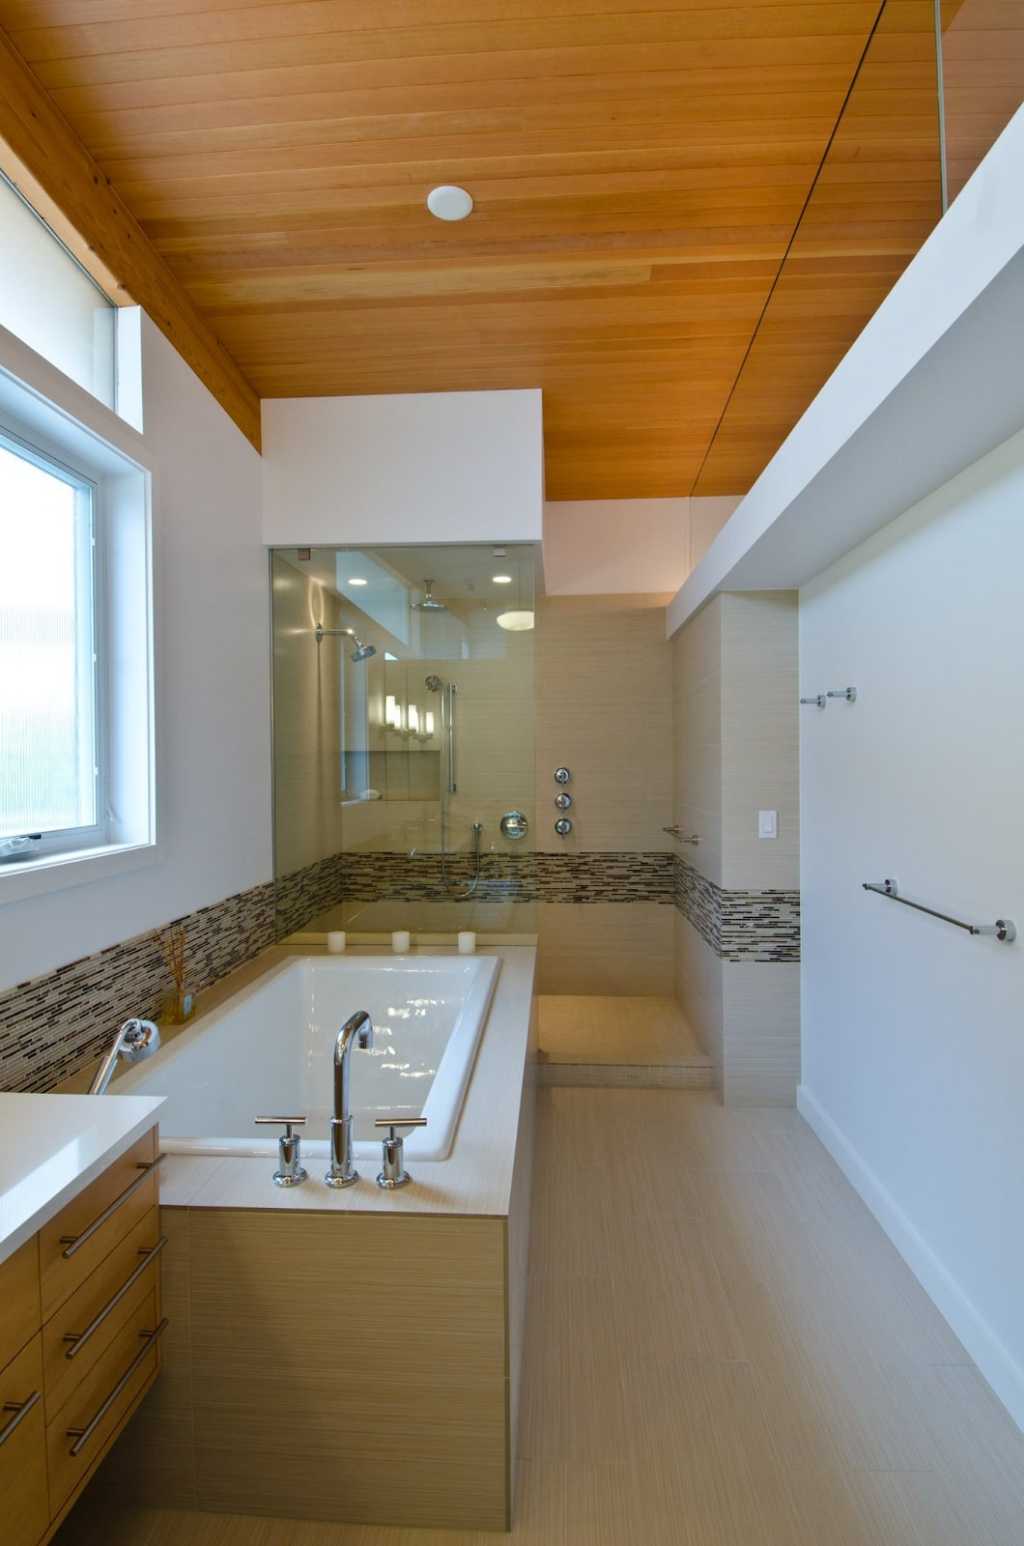 Nội thất phòng tắm hiện đại cho không gian mở với chất liệu gỗ tự nhiên